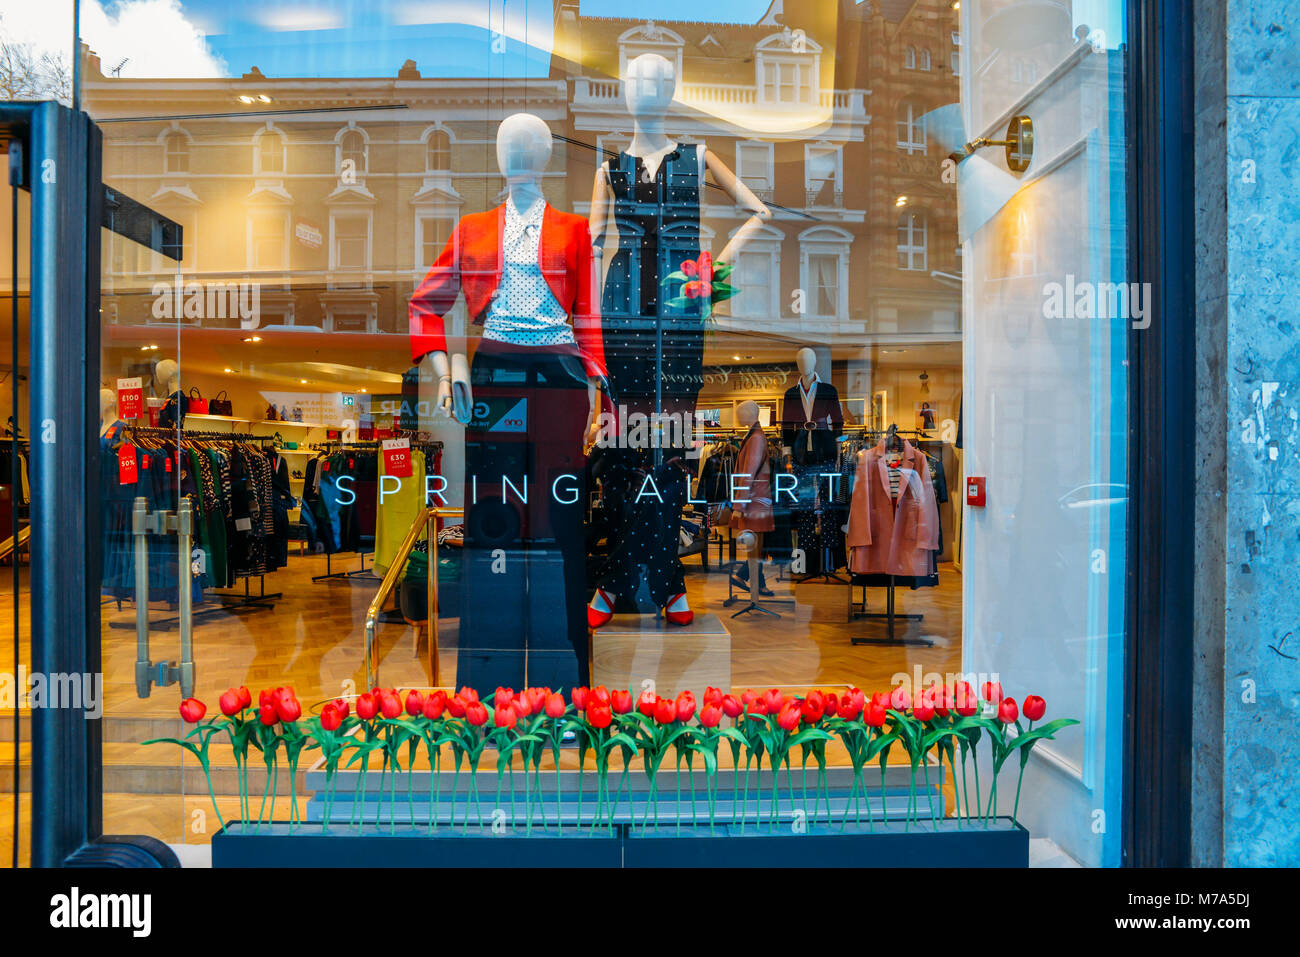 Londres, UK - 8 mars, 2018 : affichage de la fenêtre de magasin sur High Street Kensington, Londres présentant la nouvelle collection de printemps de l'habit des femmes Banque D'Images